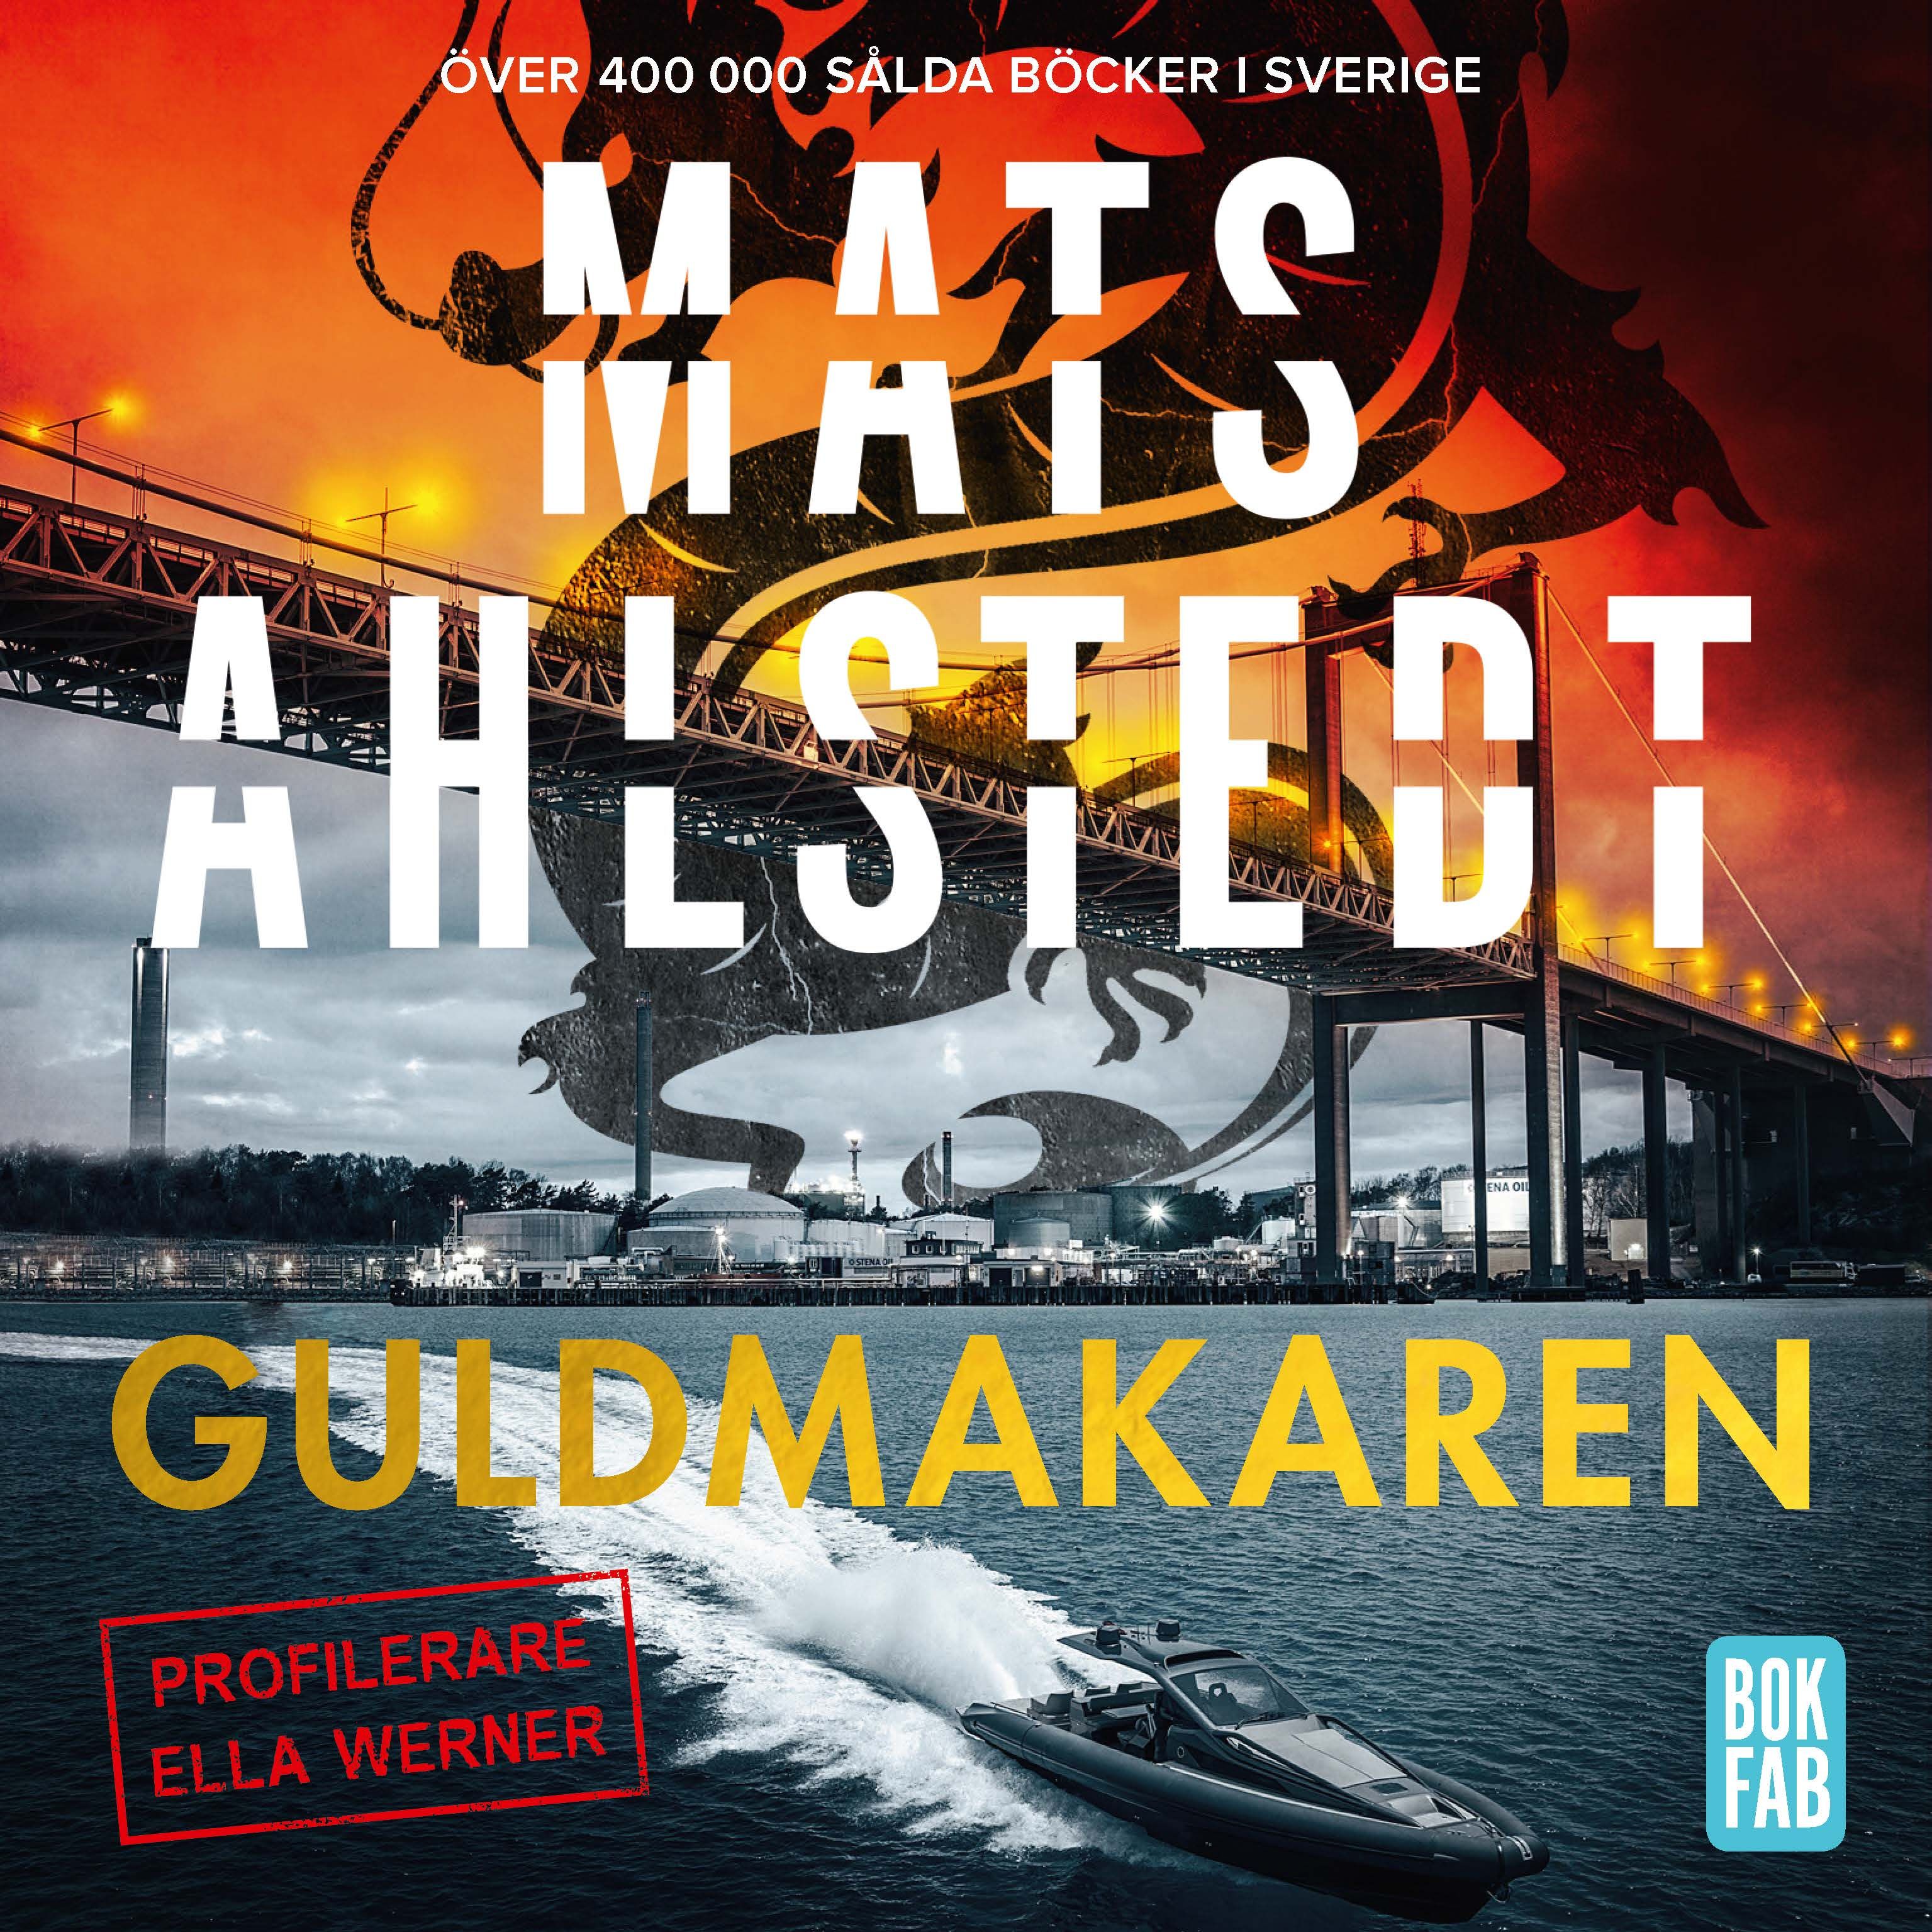 Guldmakaren, audiobook by Mats Ahlstedt